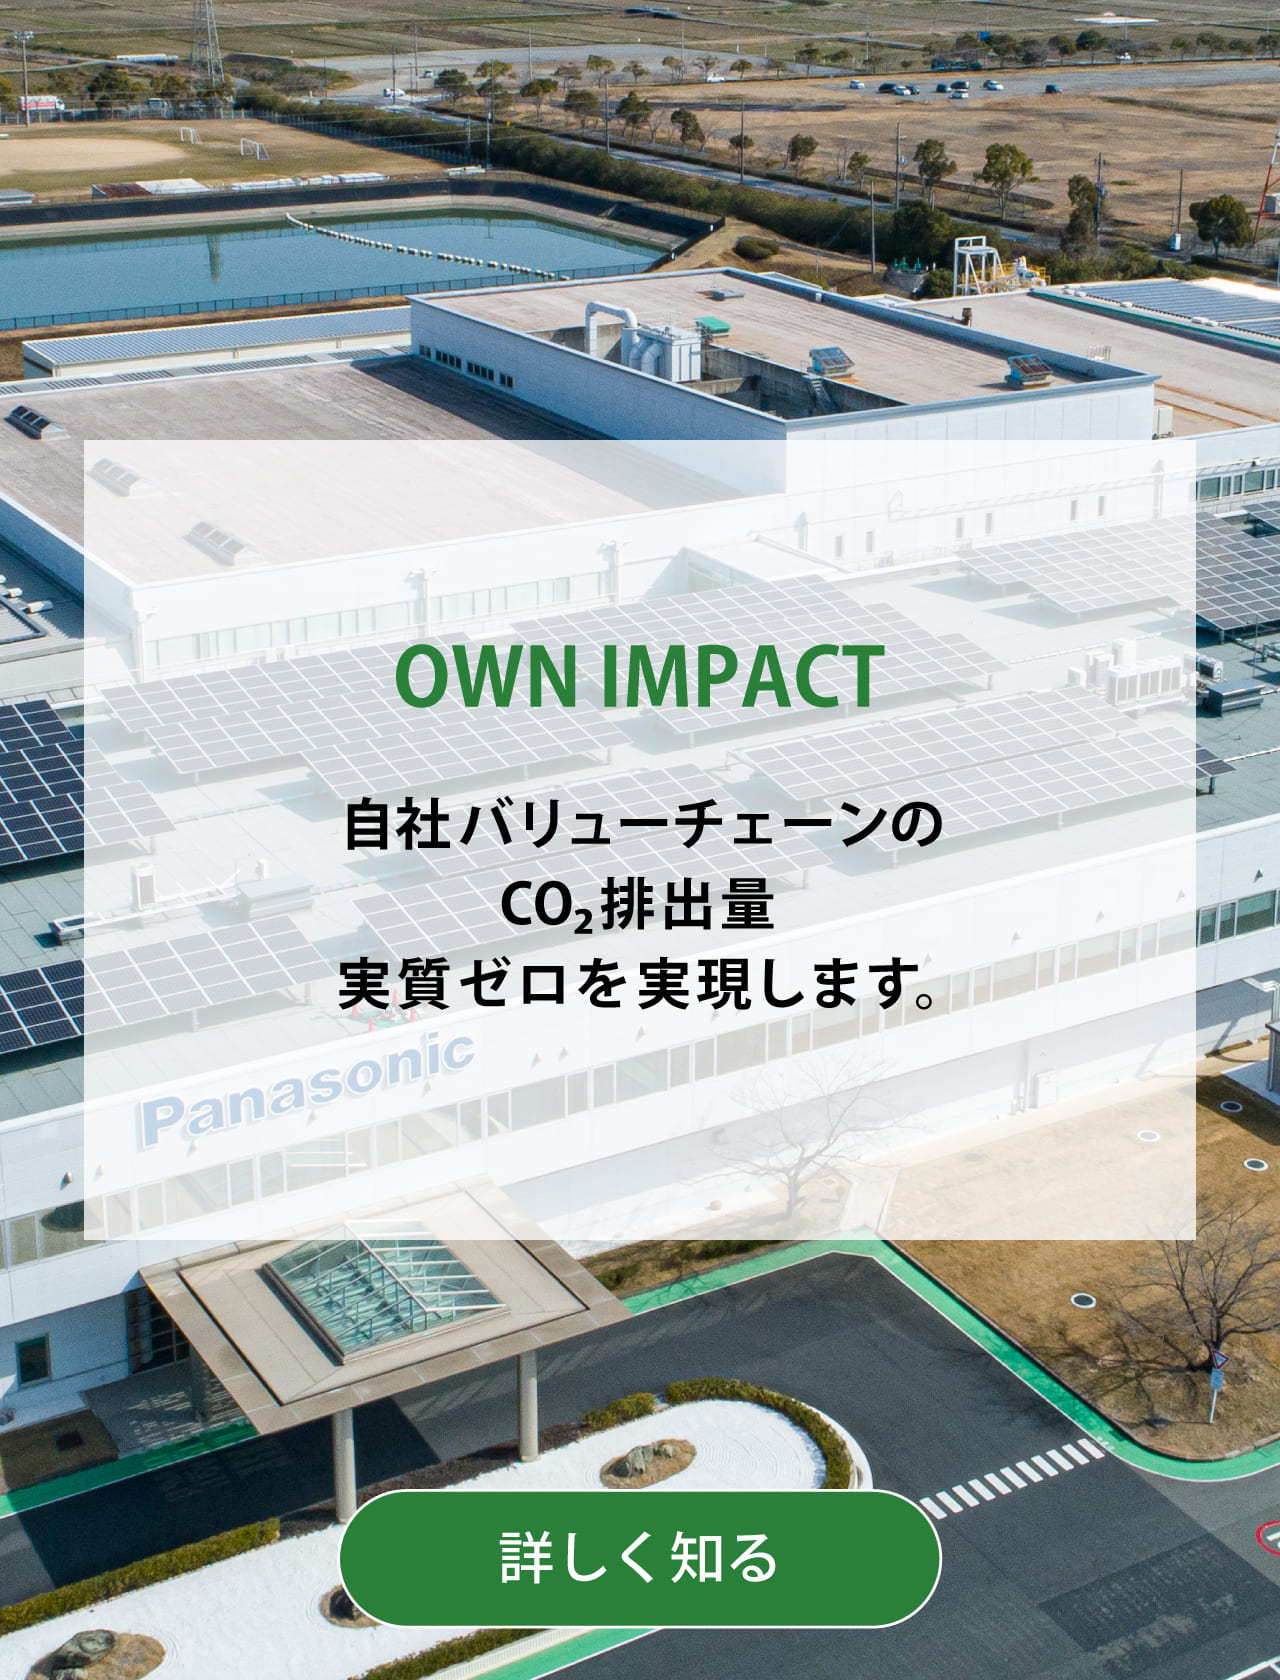 OWN IMPACT 自社バリューチェーンのCO2排出量実質ゼロを実現します。背景写真：屋上に太陽光発電システムを設置したパナソニックの工場の俯瞰。詳しく知る